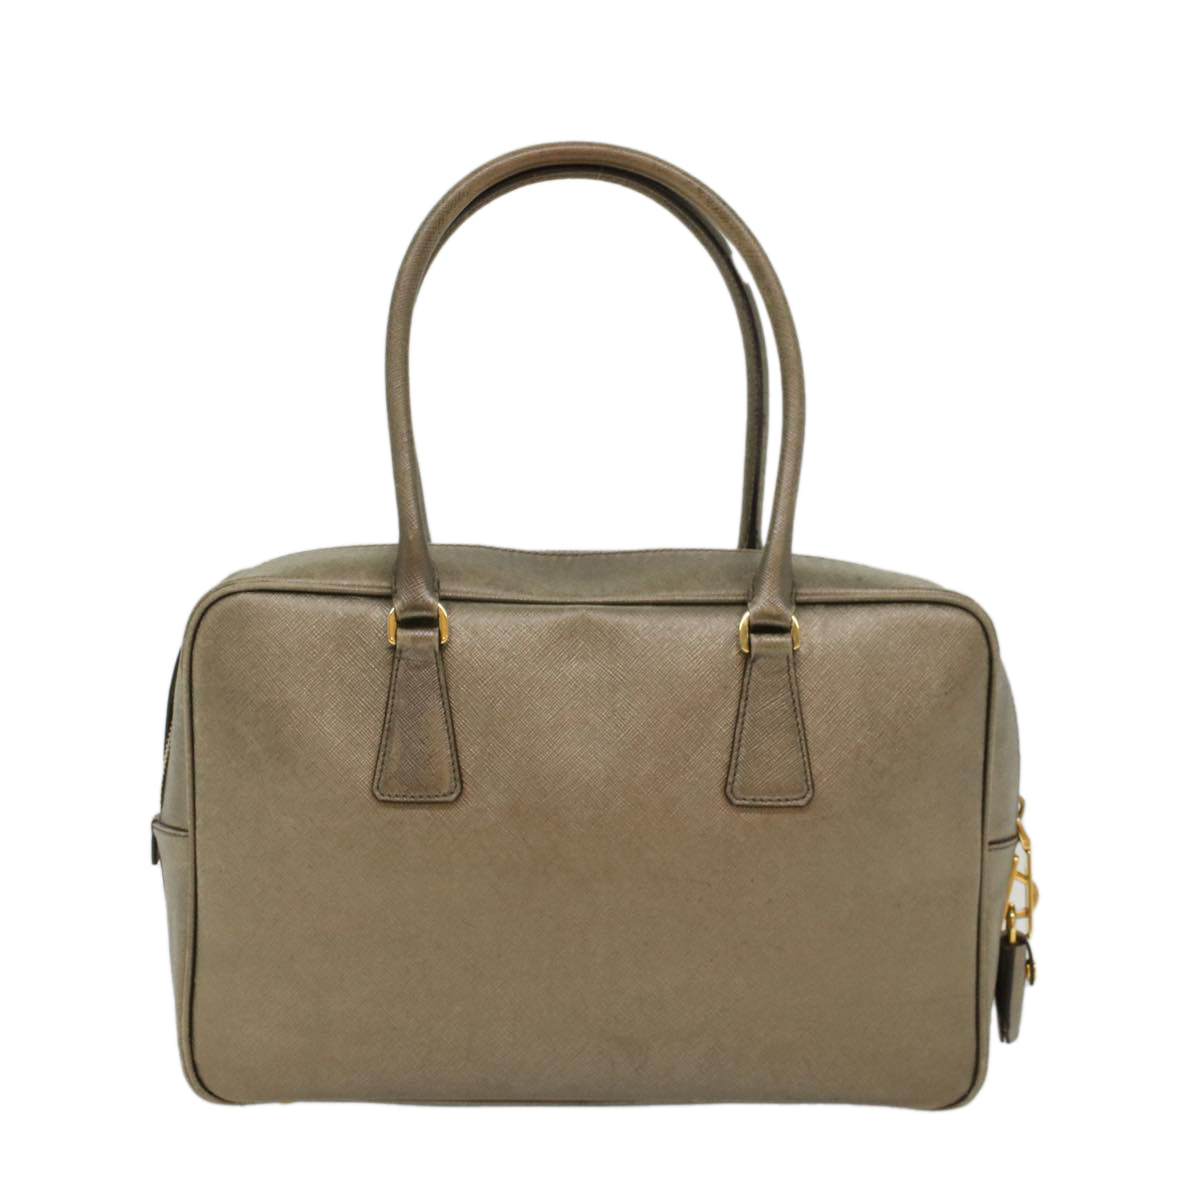 PRADA Safiano Leather Hand Bag Gold Tone Auth 48193 - 0